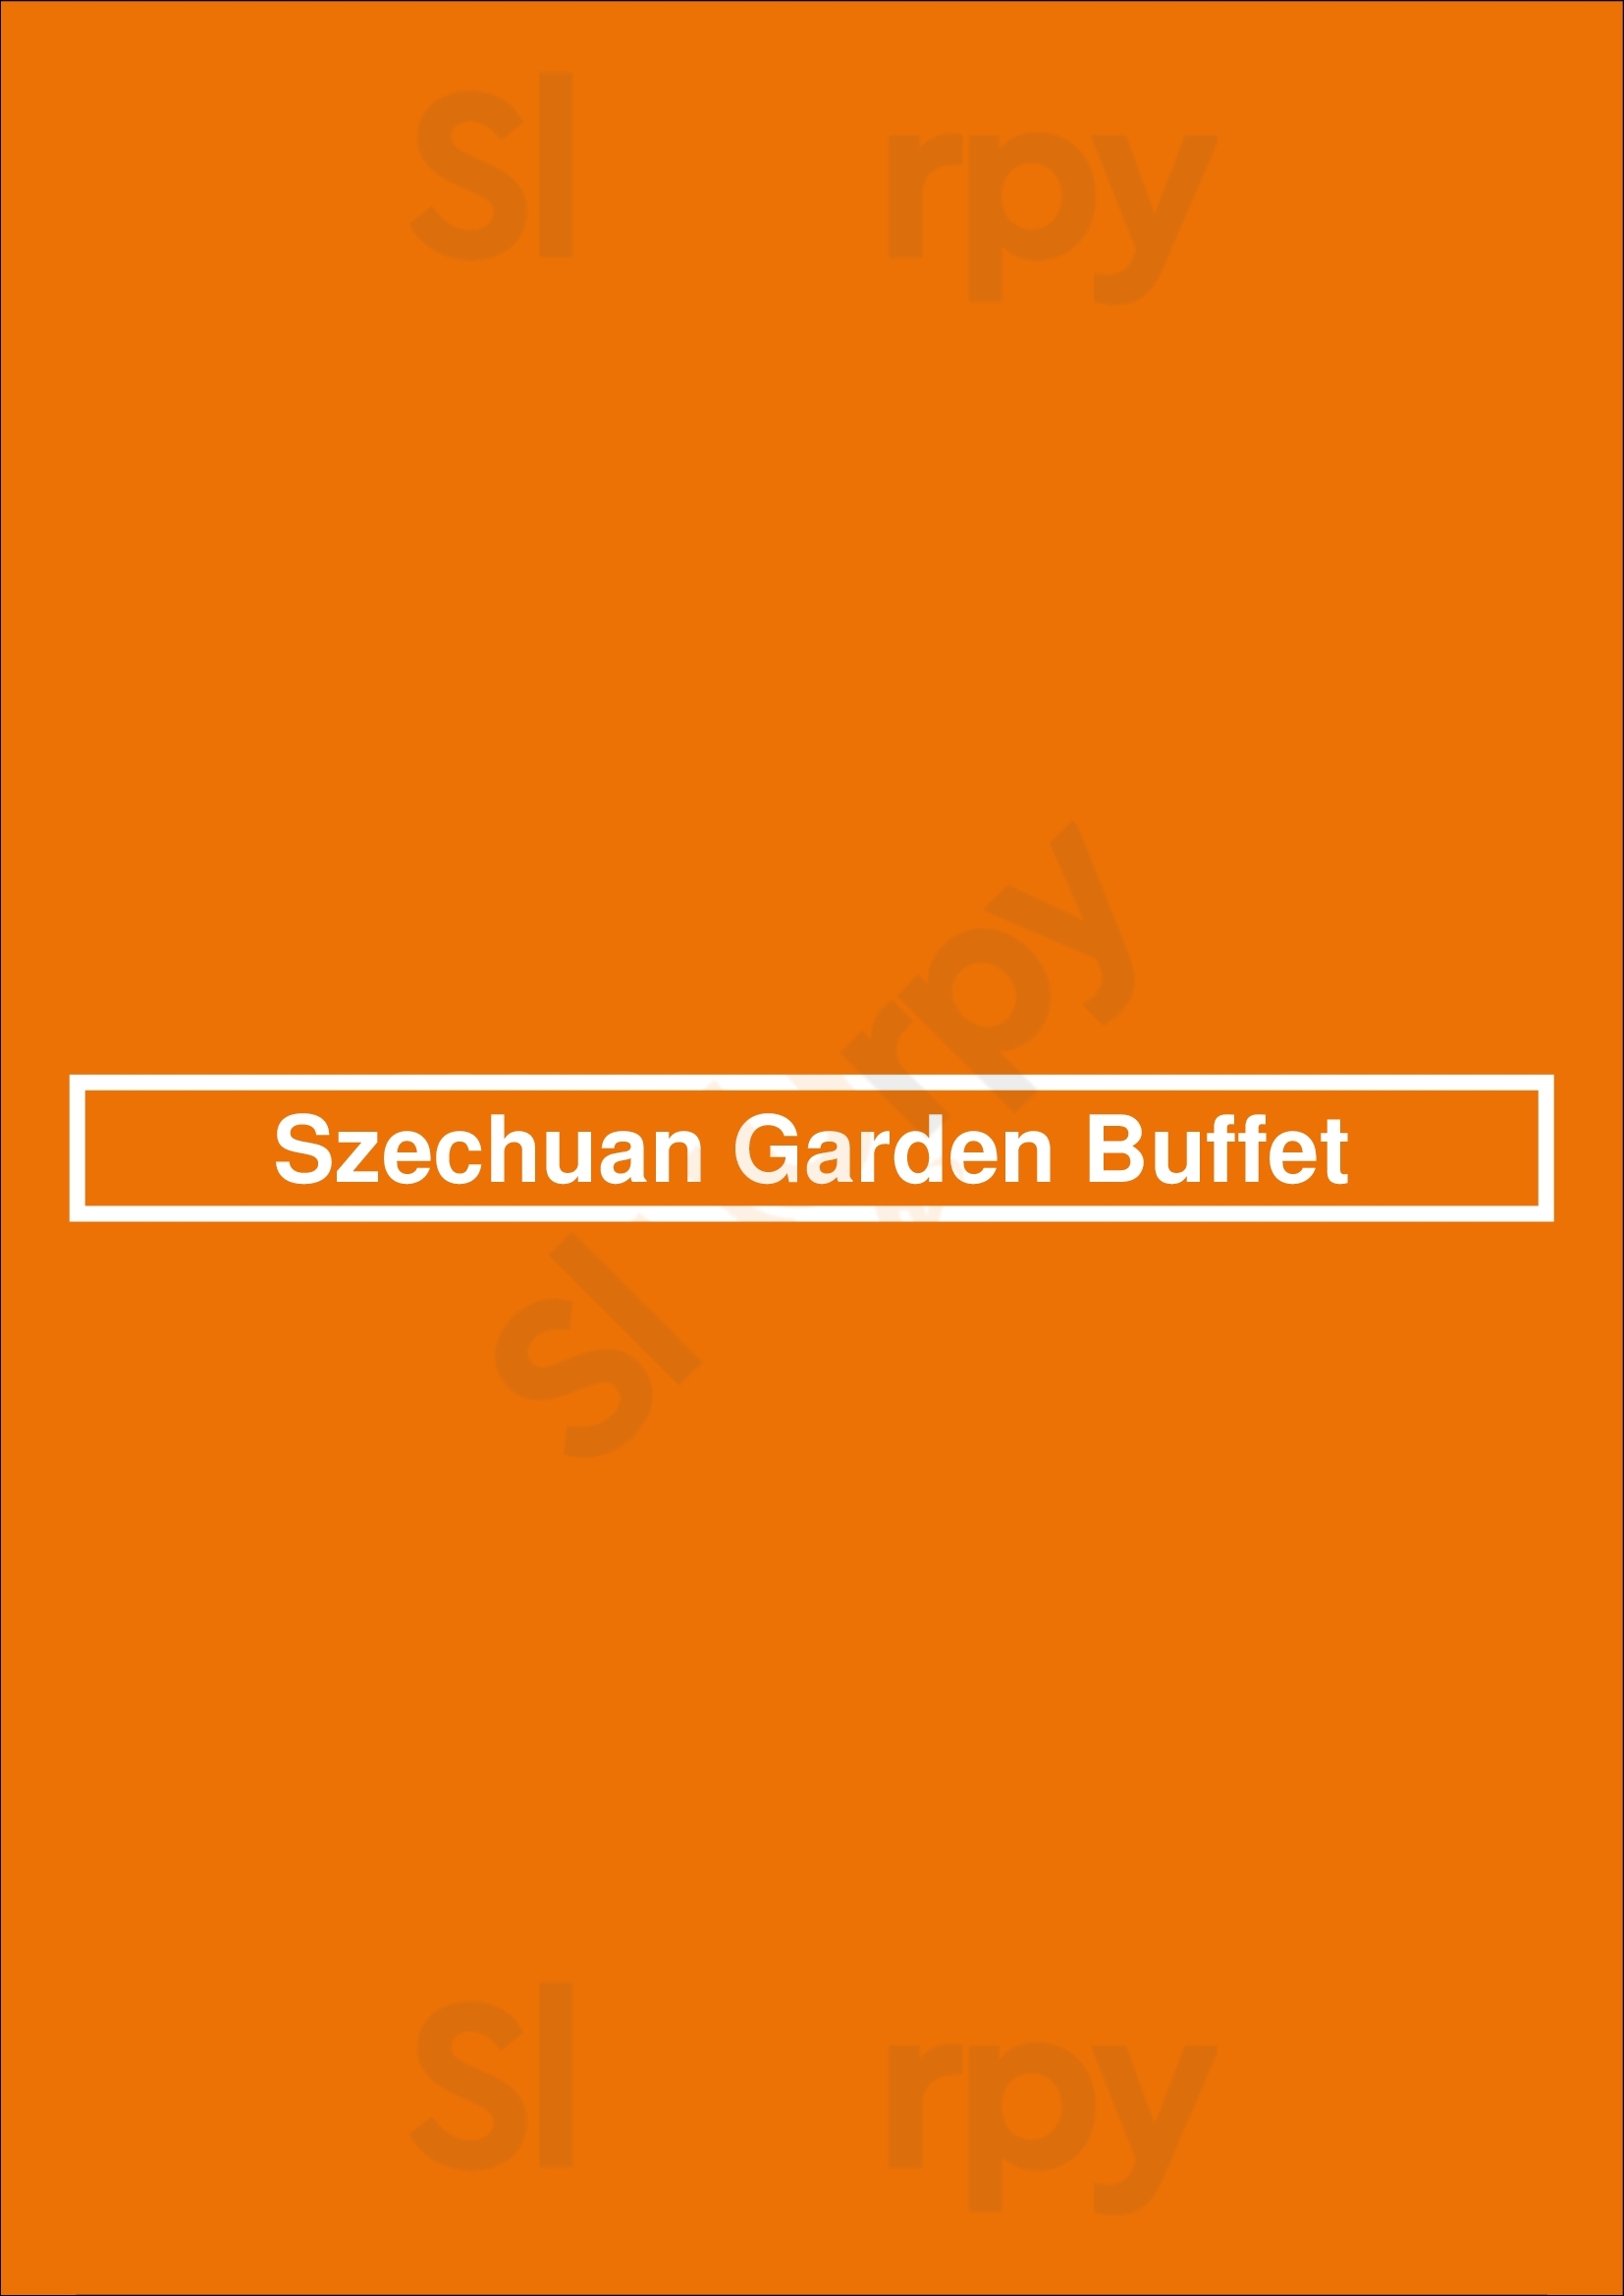 Szechuan Garden Buffet Edmonton Menu - 1